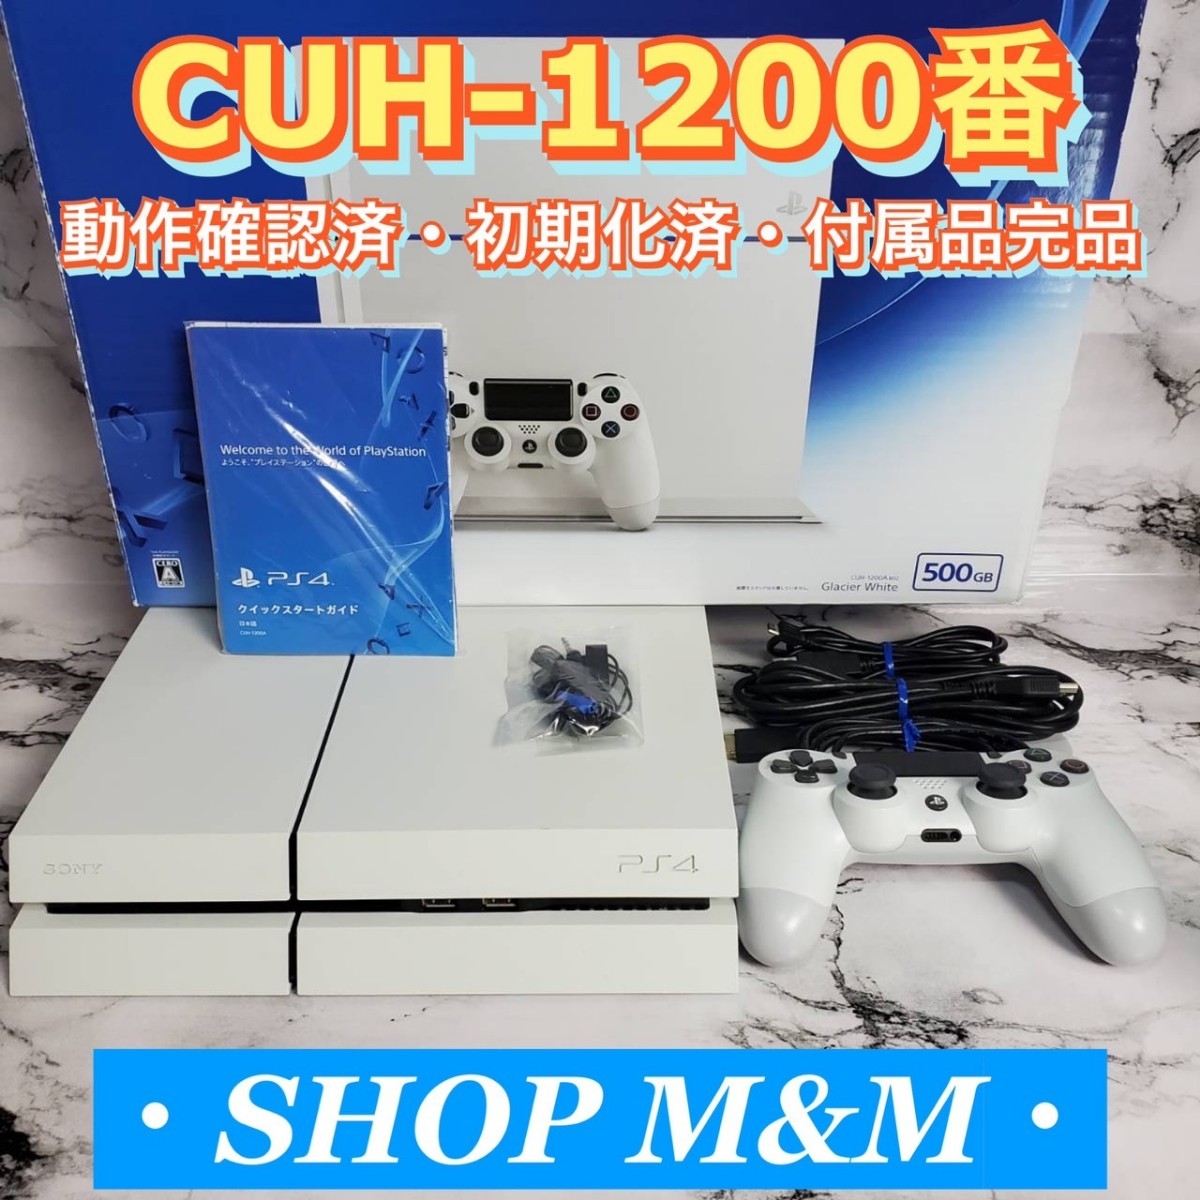 インボイス対応 CUH-1200 動作確認済み PS4 本体 ホワイト 封印シール